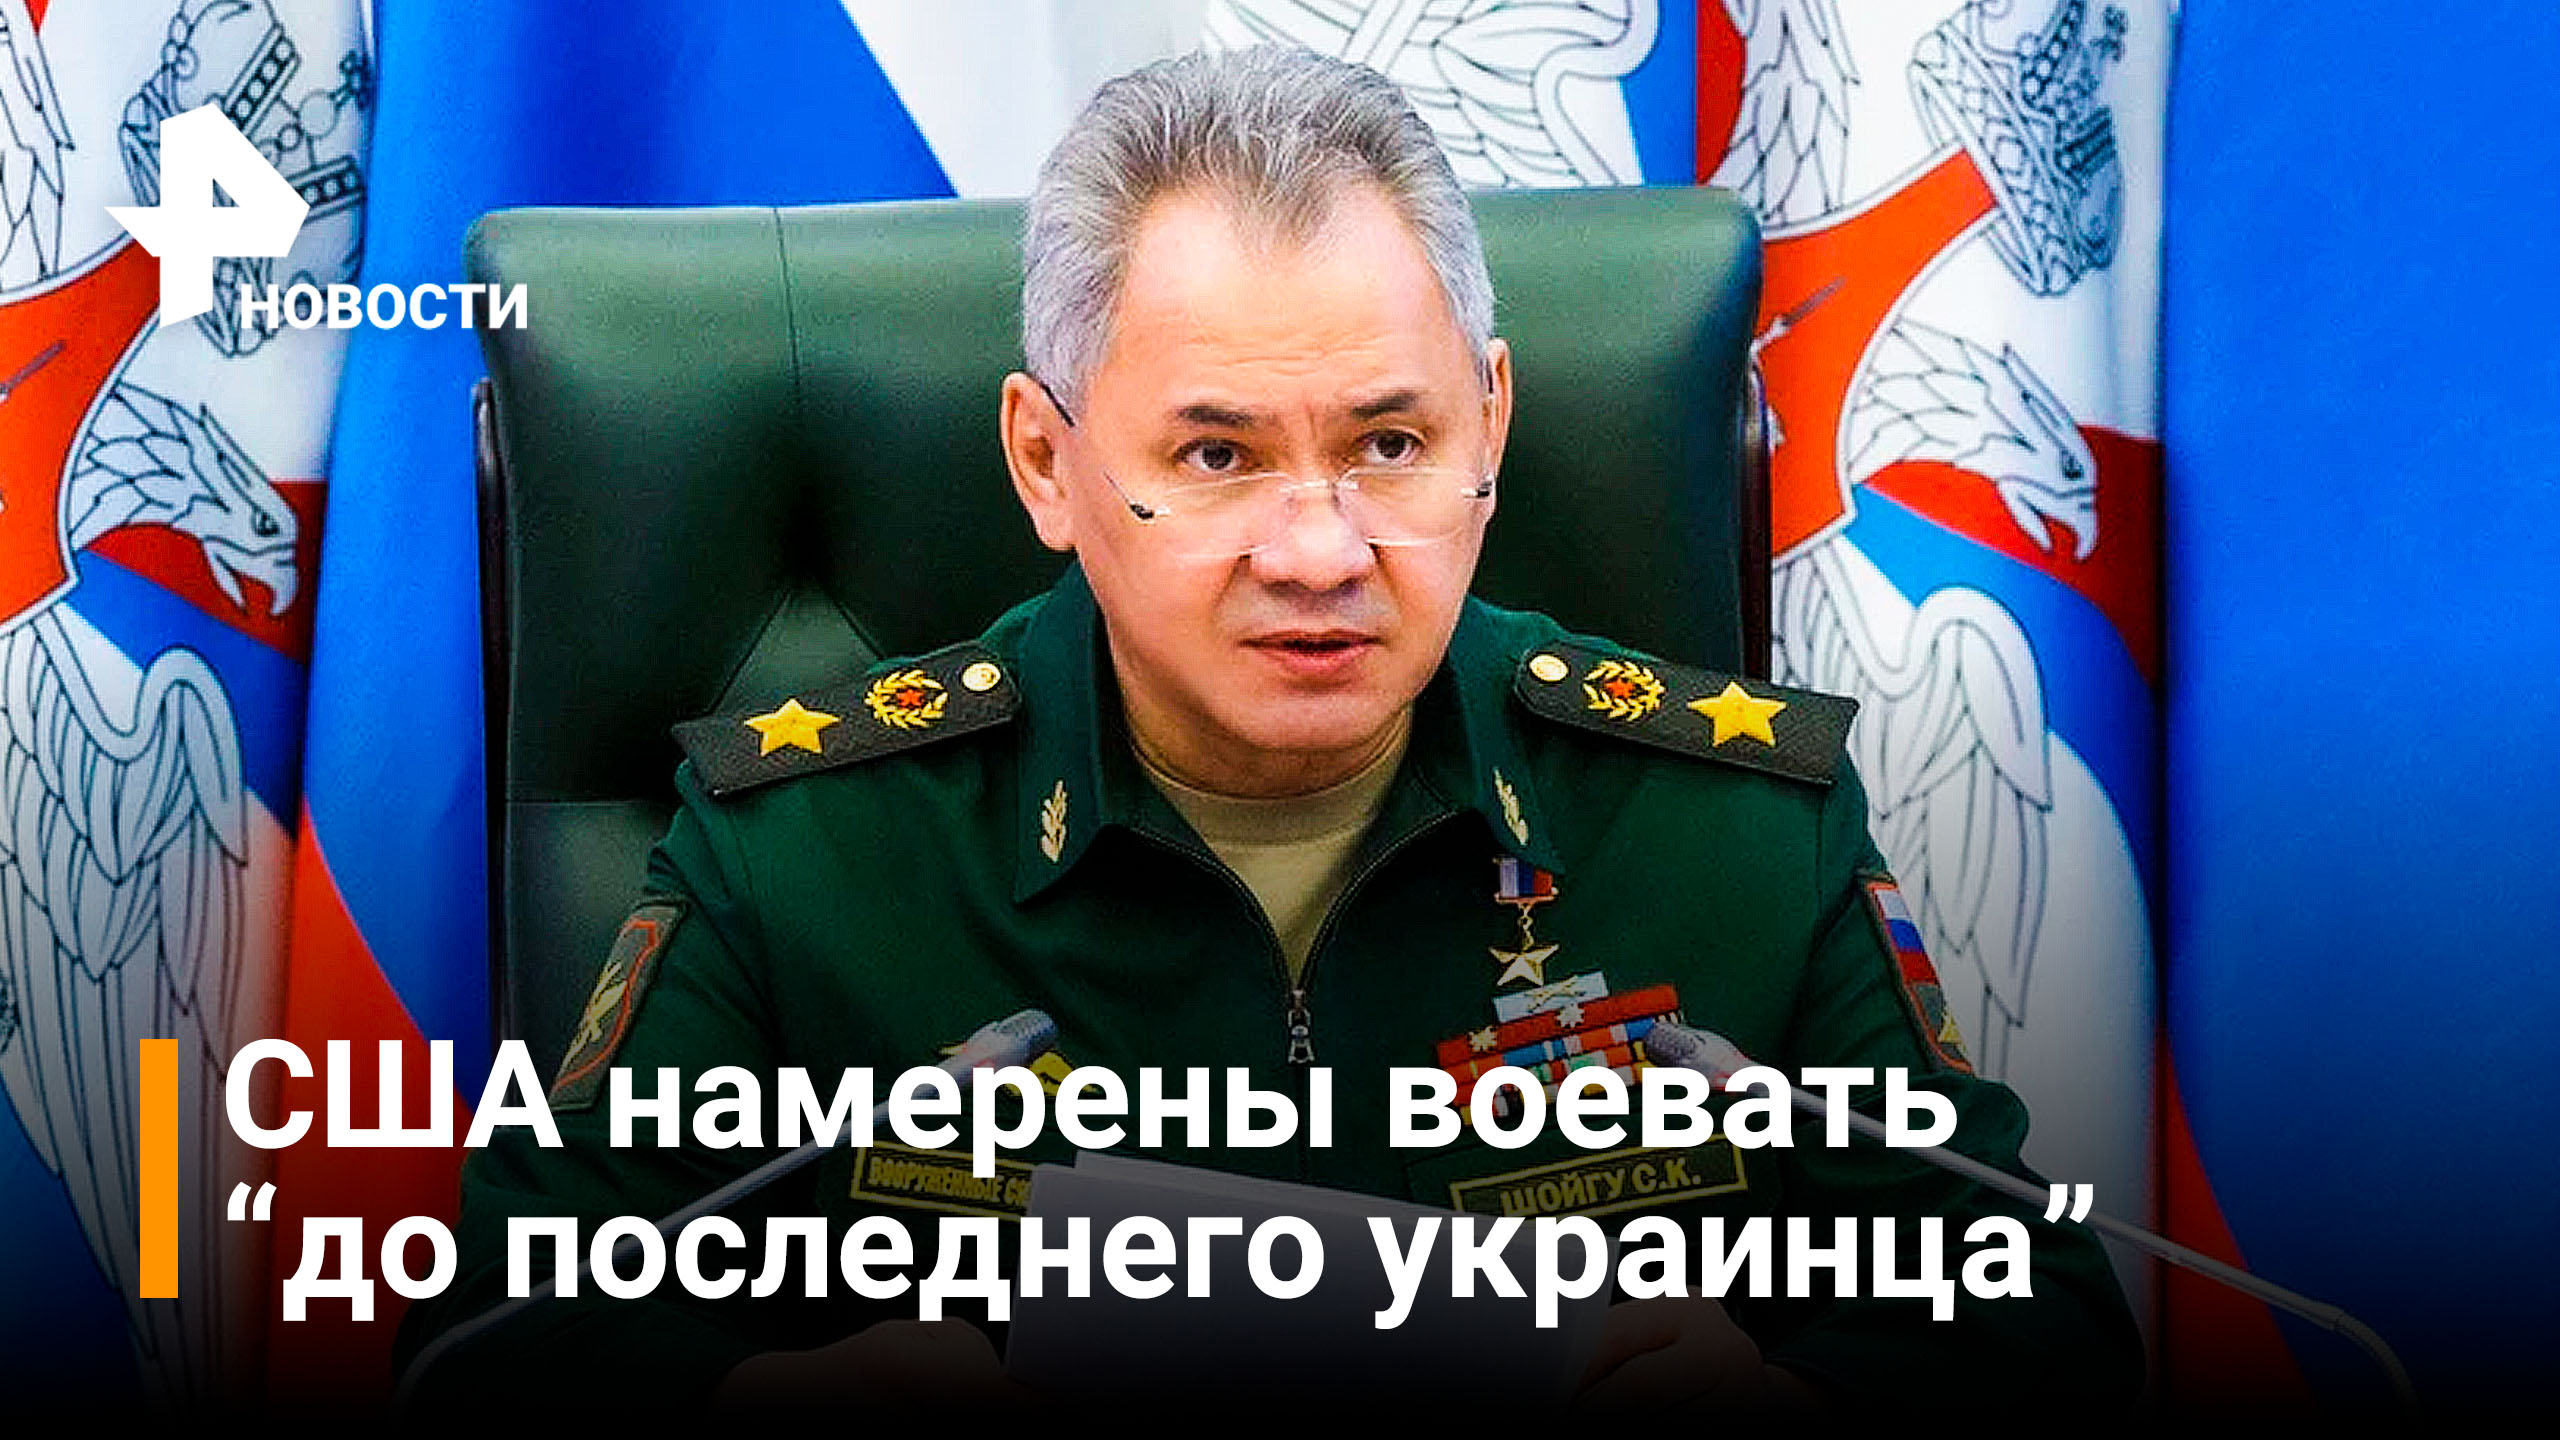 Шойгу: Россия последовательно выполняет план спецоперации / РЕН Новости